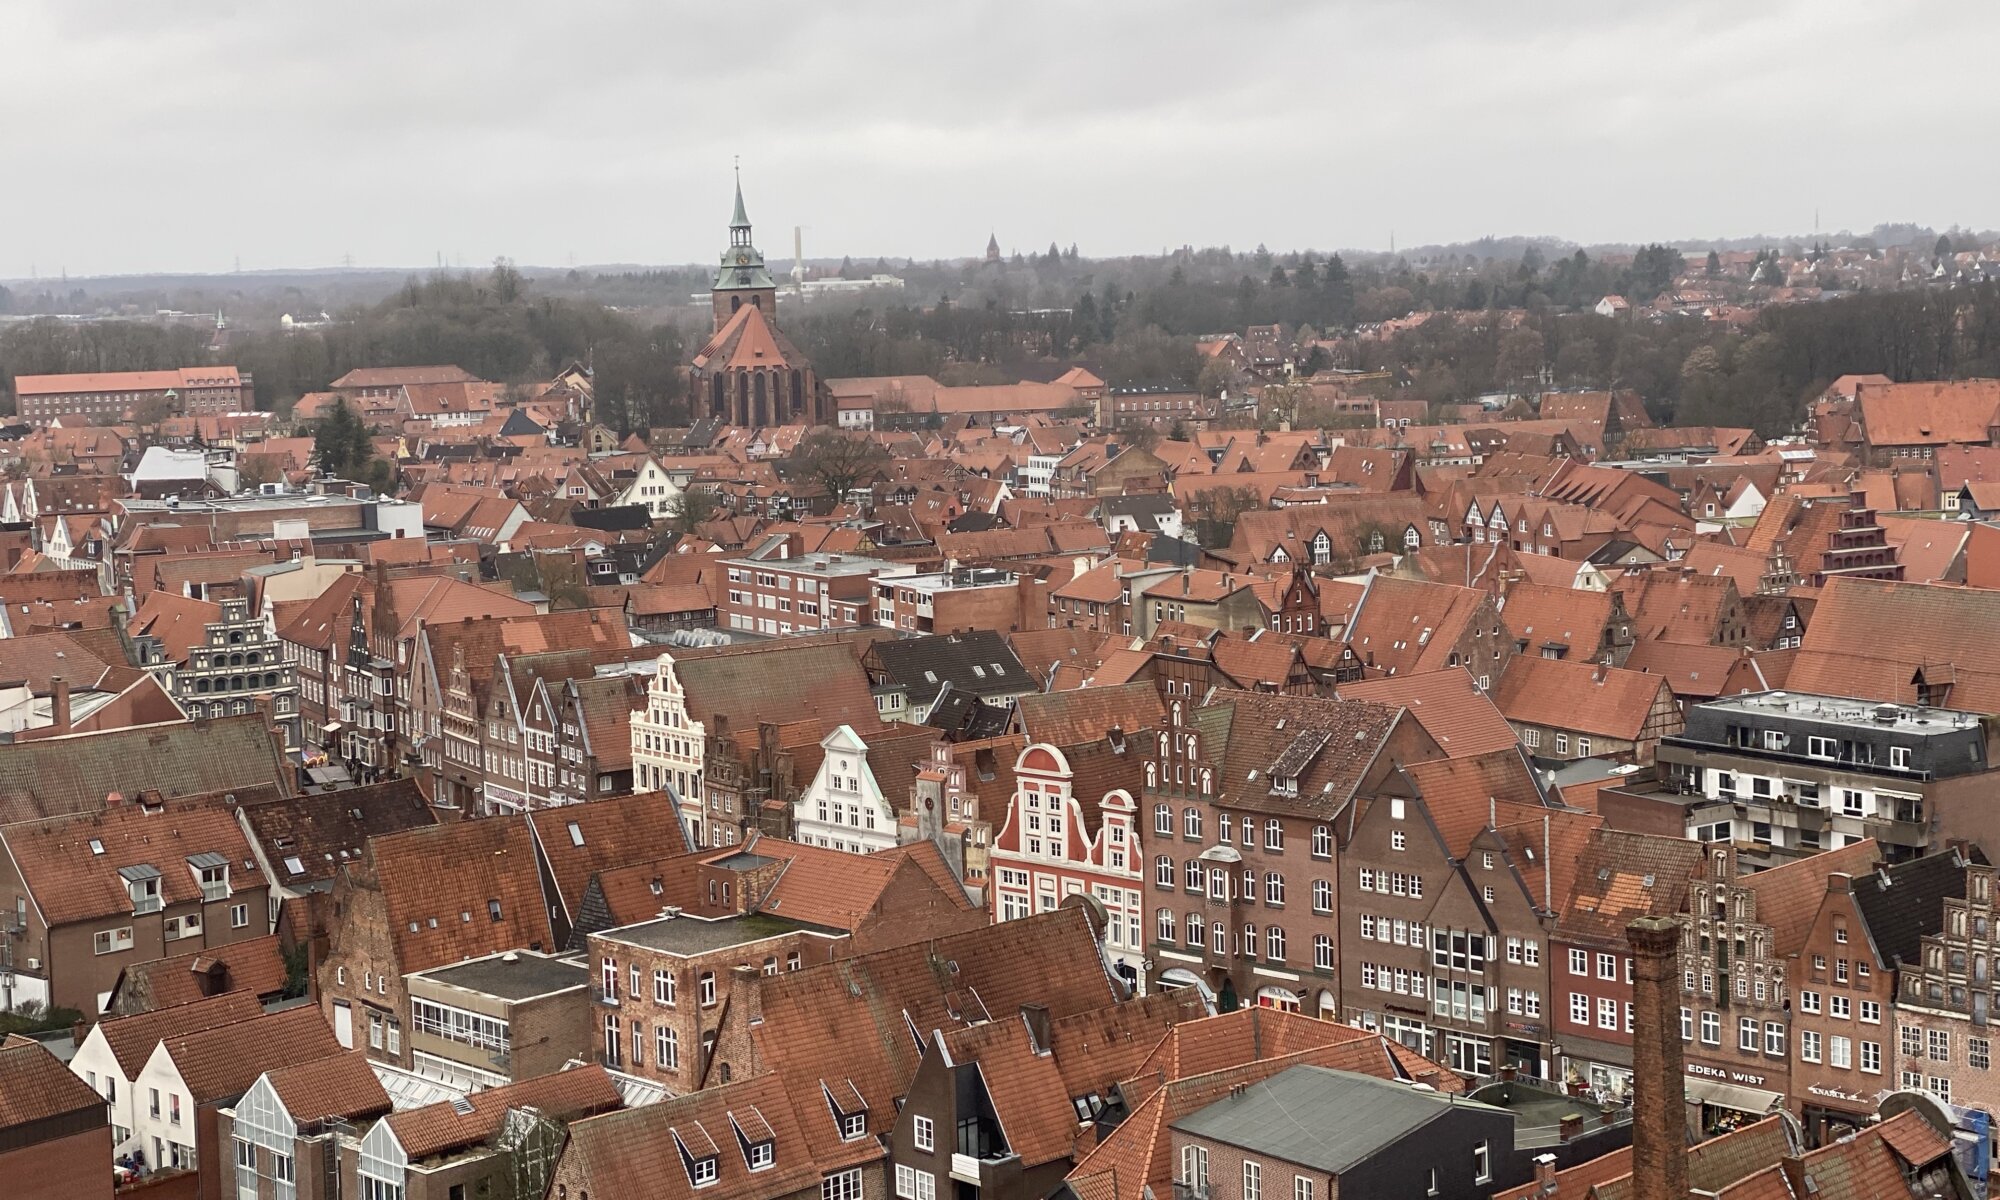 View from Wasserturm, Lüneburg